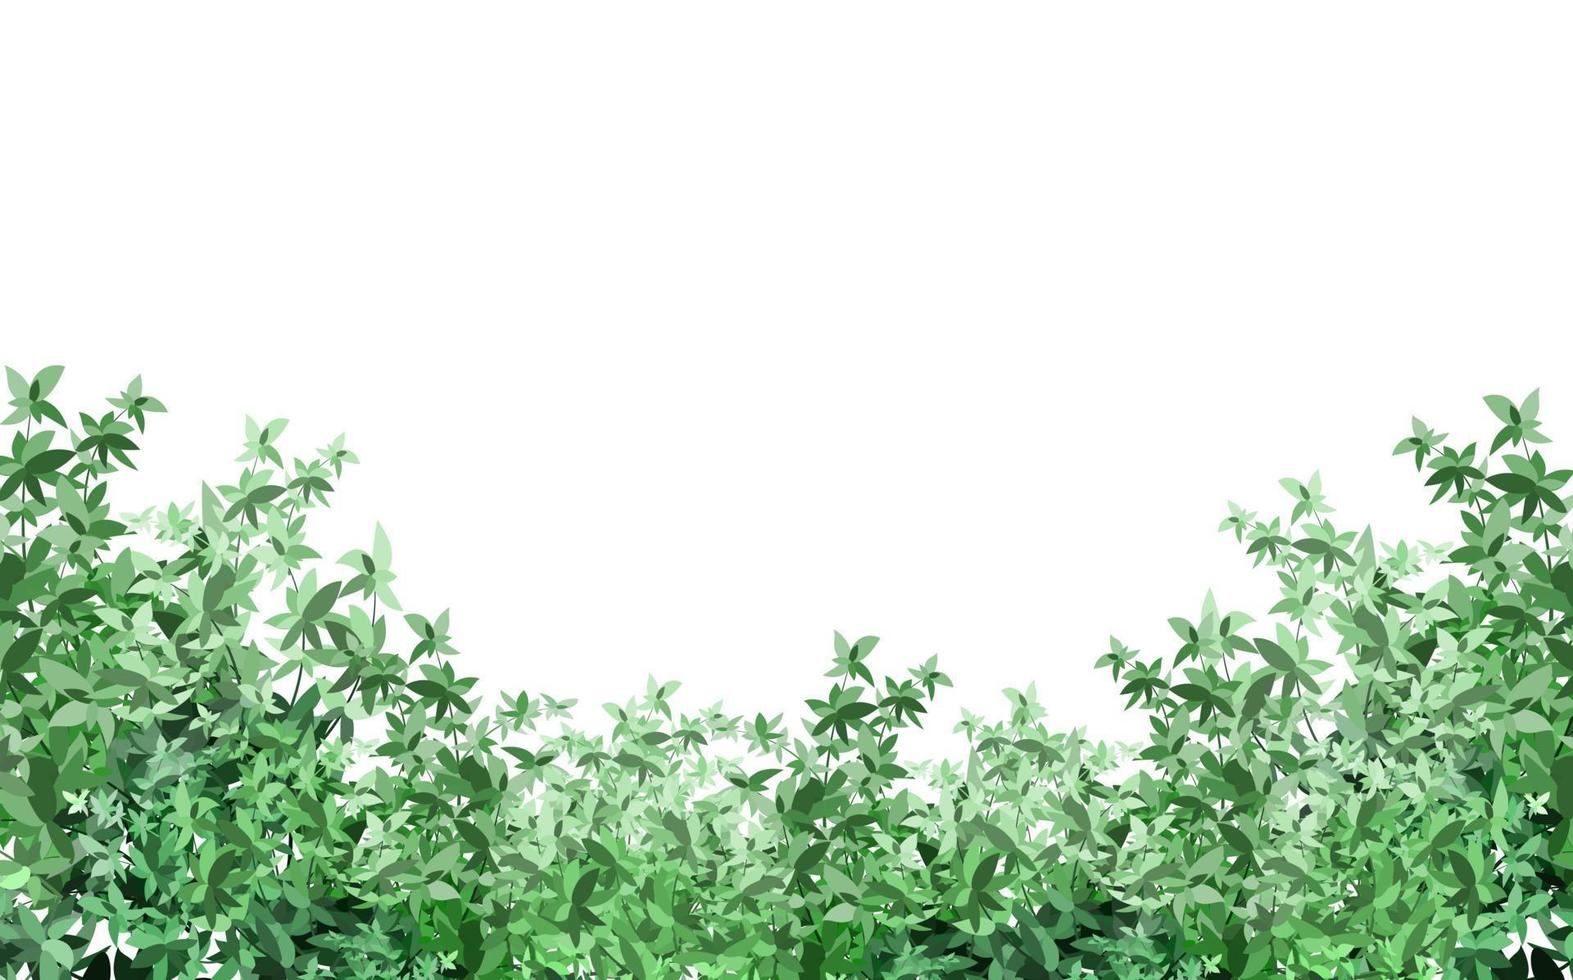 uppsättning av dekorativ grön växt i de form av en häck.realistisk trädgård buske, säsong- buske, buxbom, träd krona buske lövverk. vektor